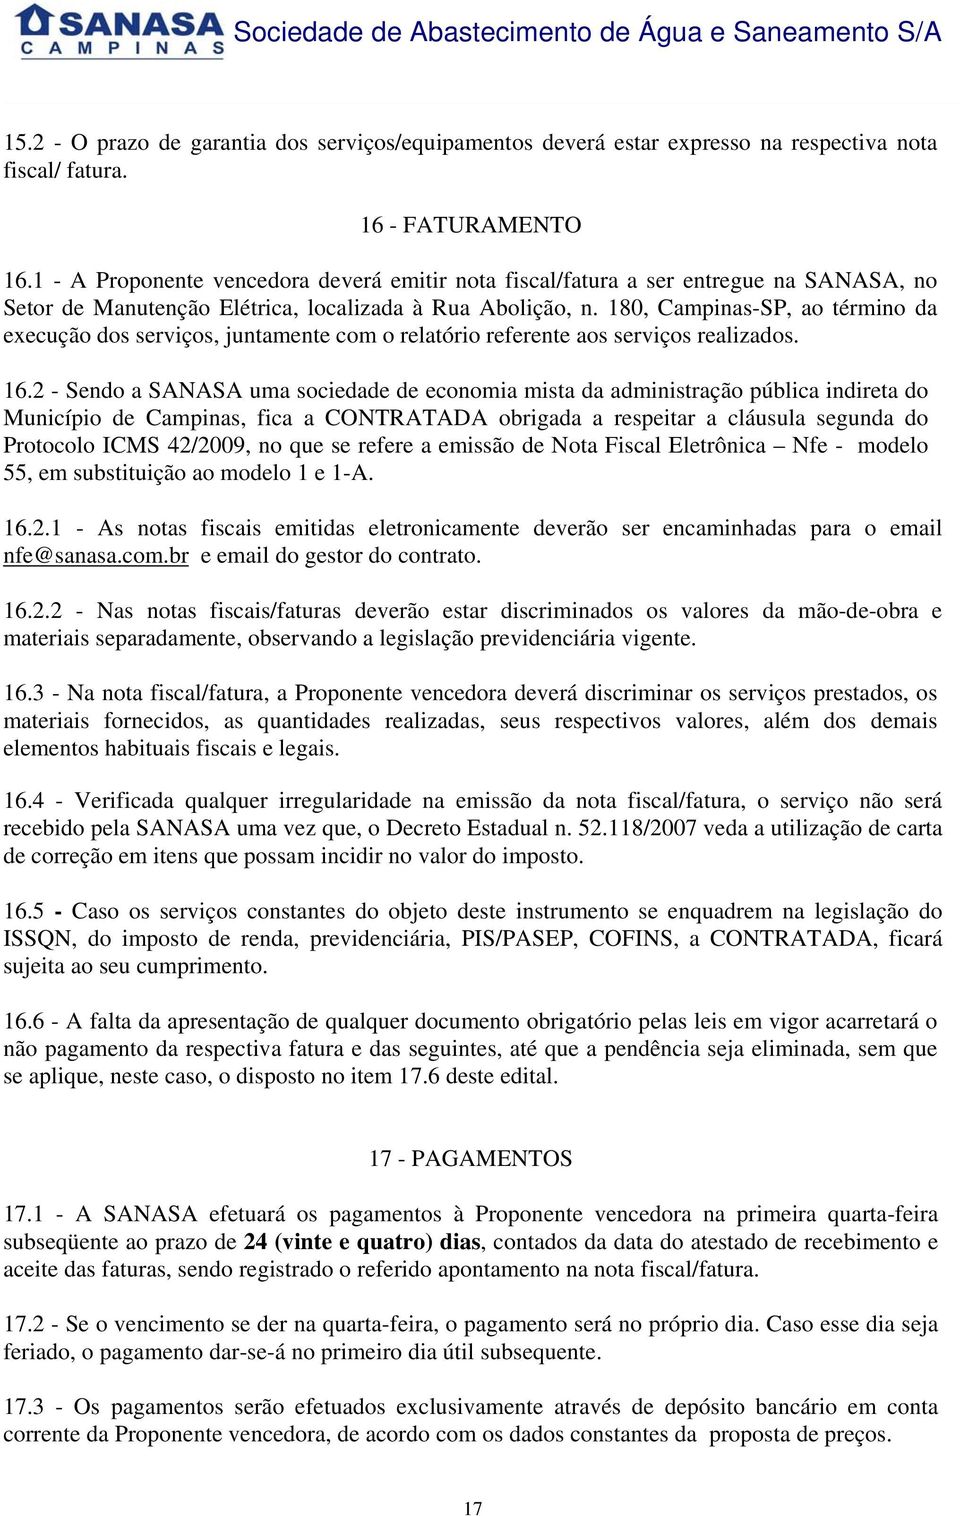 180, Campinas-SP, ao término da execução dos serviços, juntamente com o relatório referente aos serviços realizados. 16.